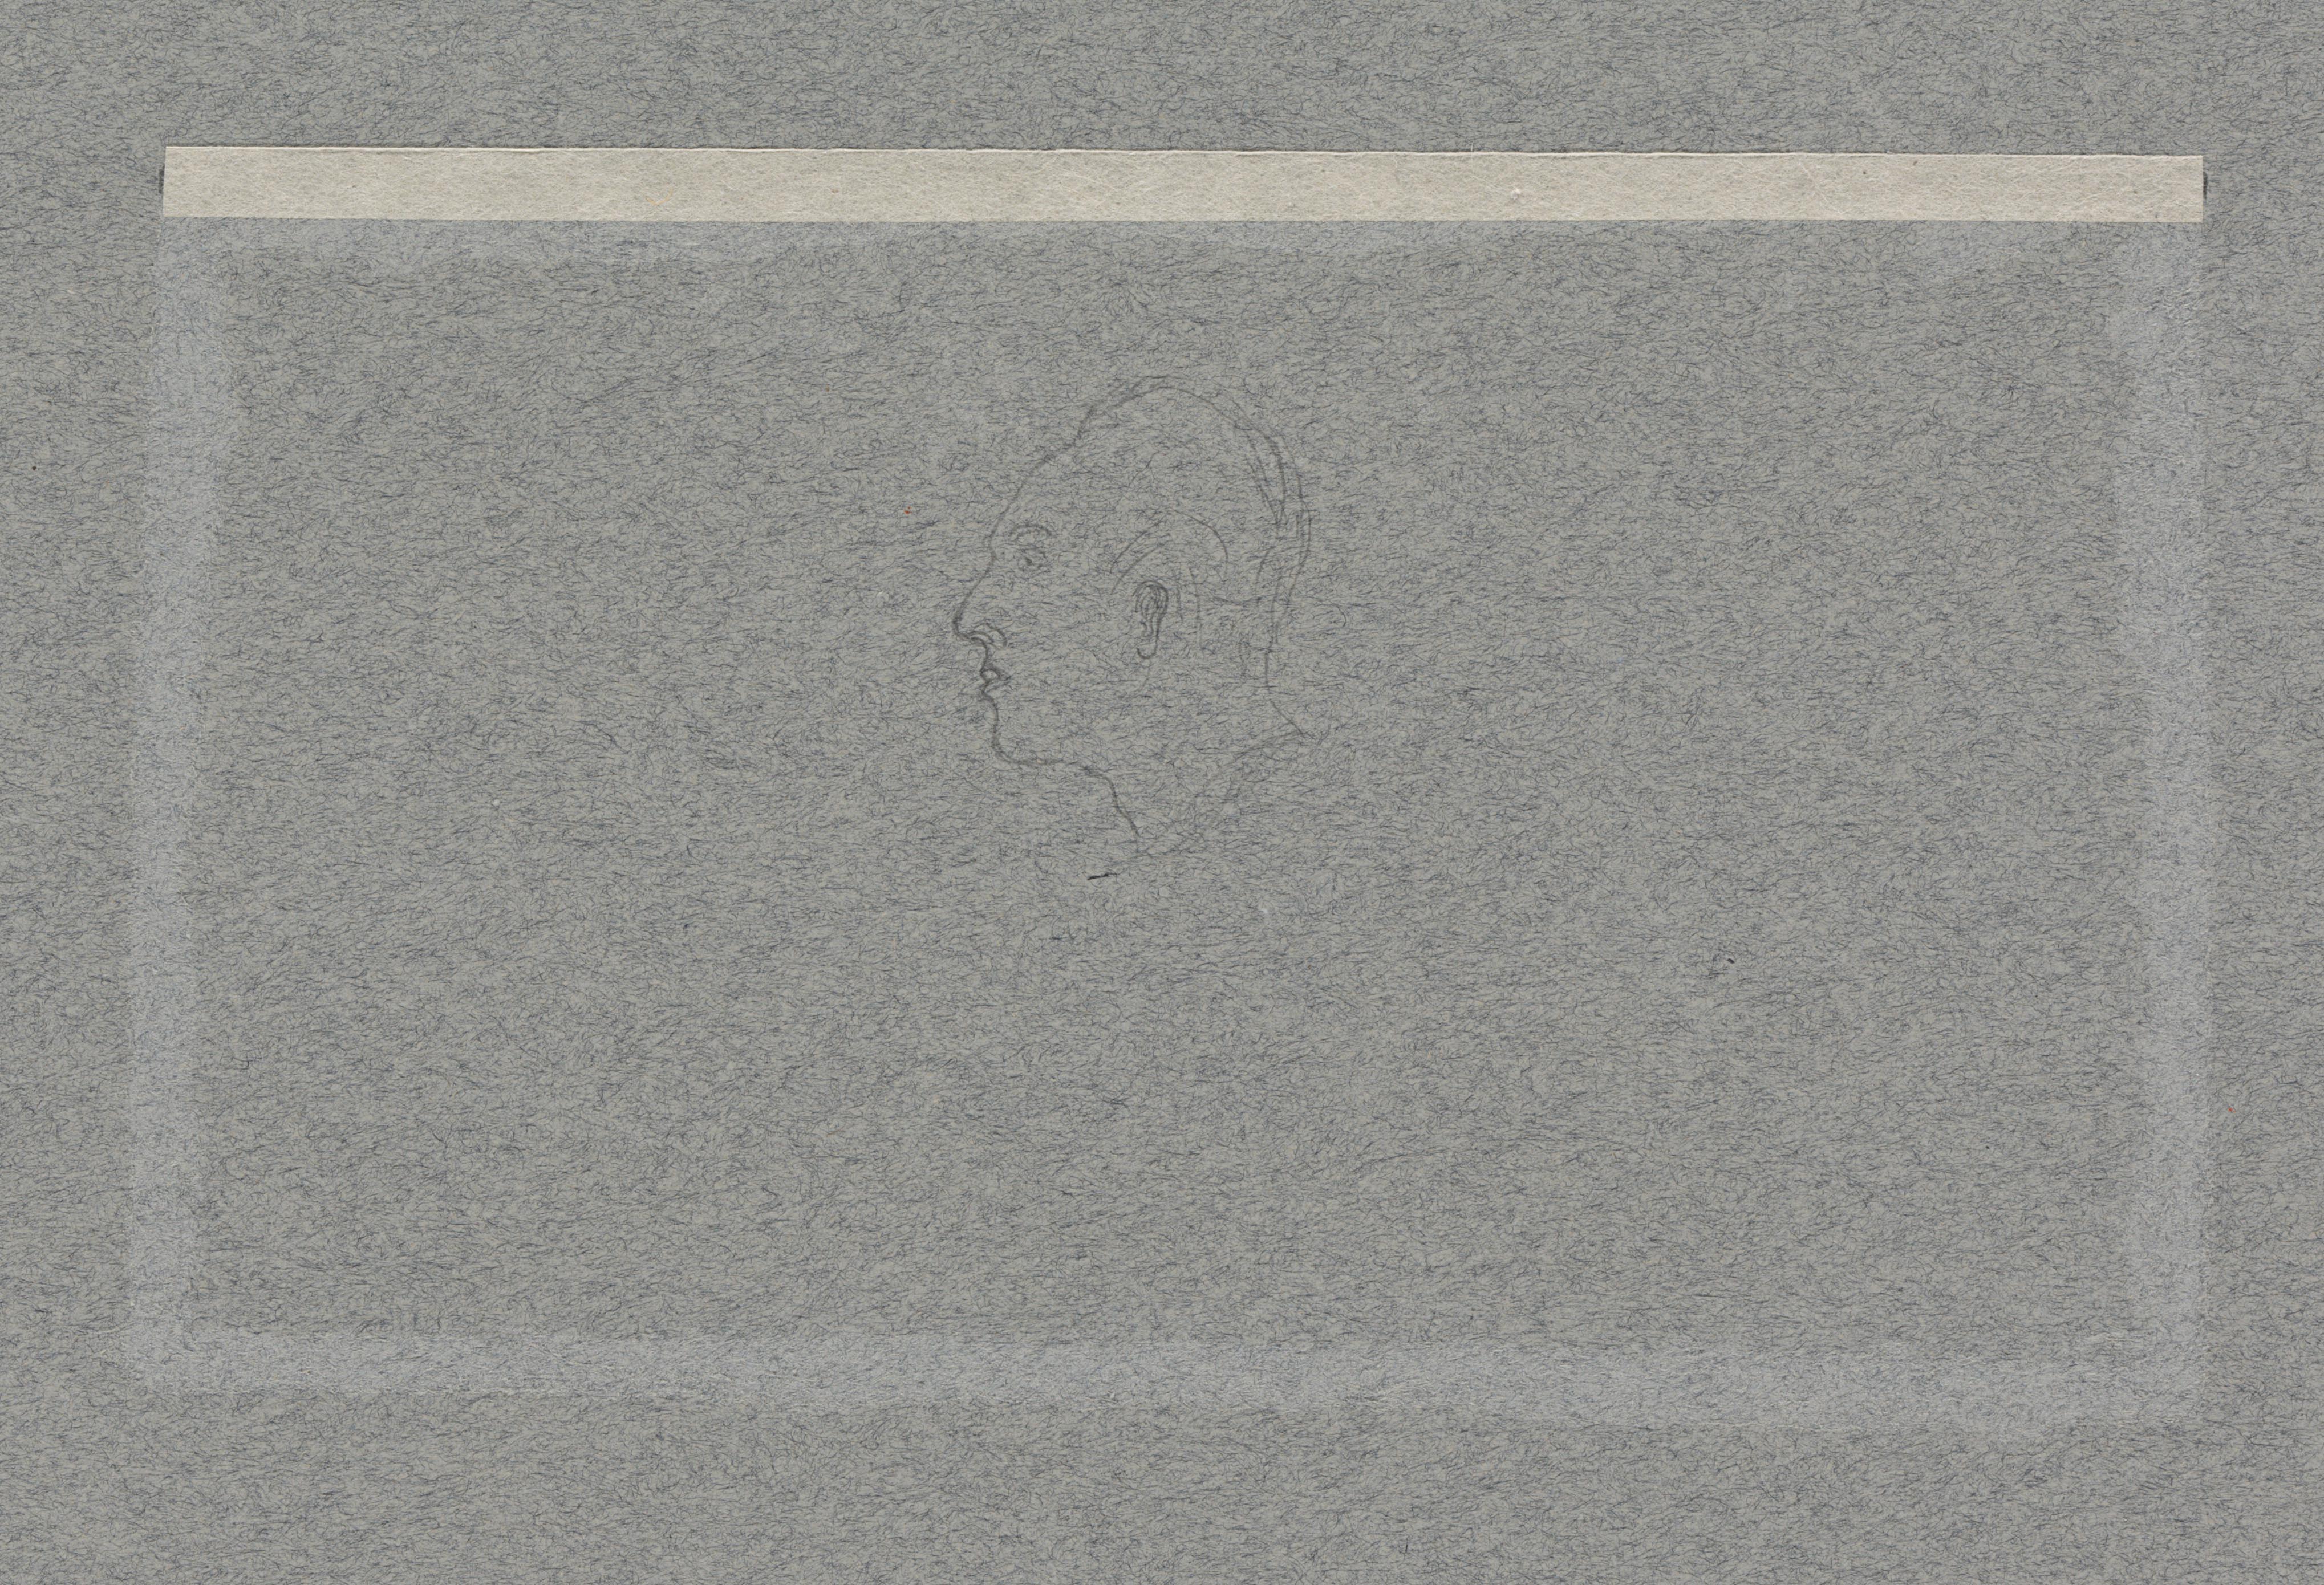 Blågrått pappersark med rester av lim och pappersremsor, i mitten skymtar en vag skiss av ett mansansikte i profil.